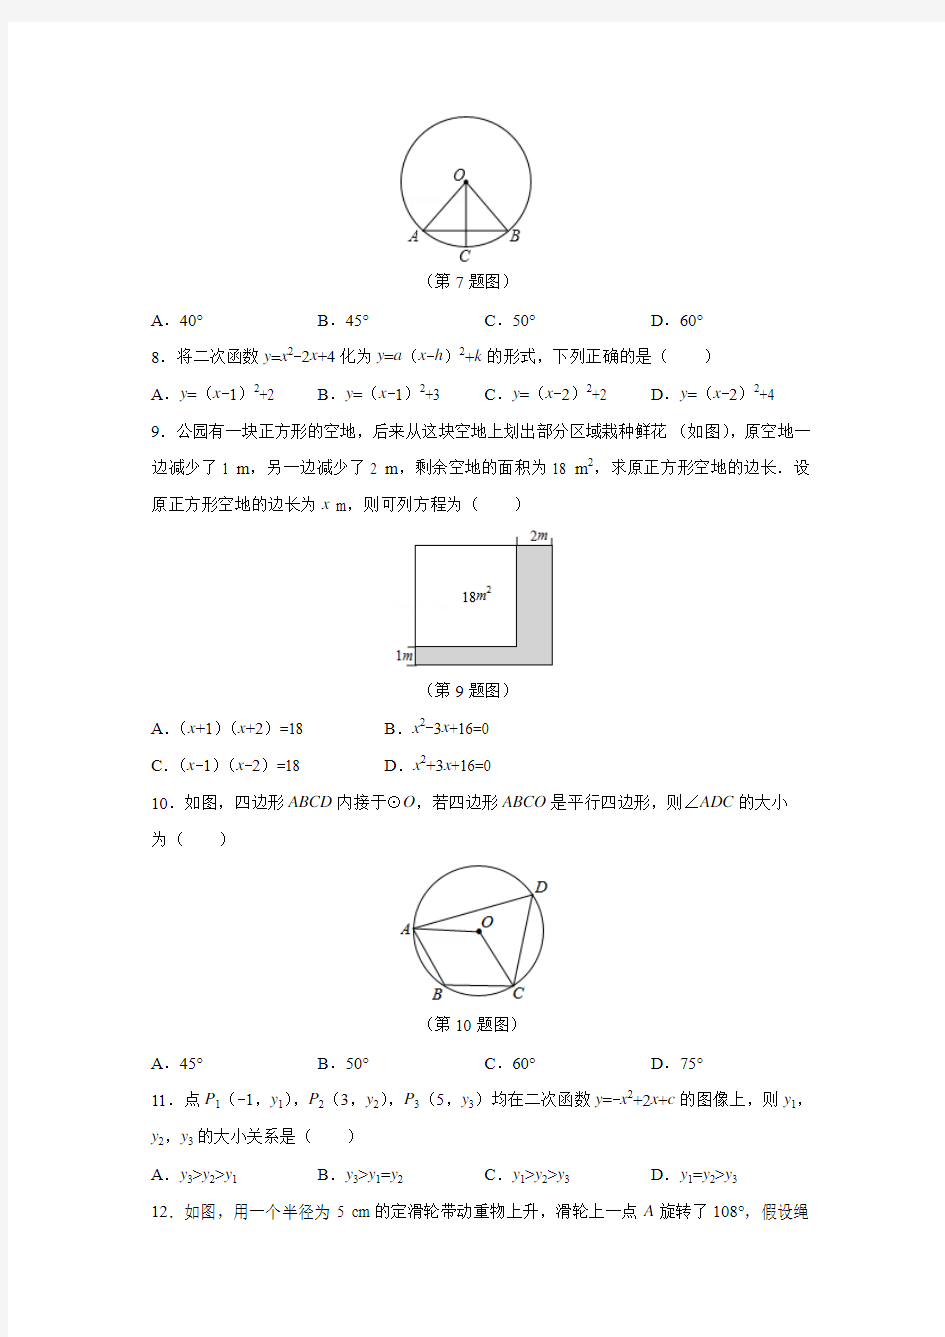 2016年甘肃省兰州市中考数学试卷(A卷)含答案